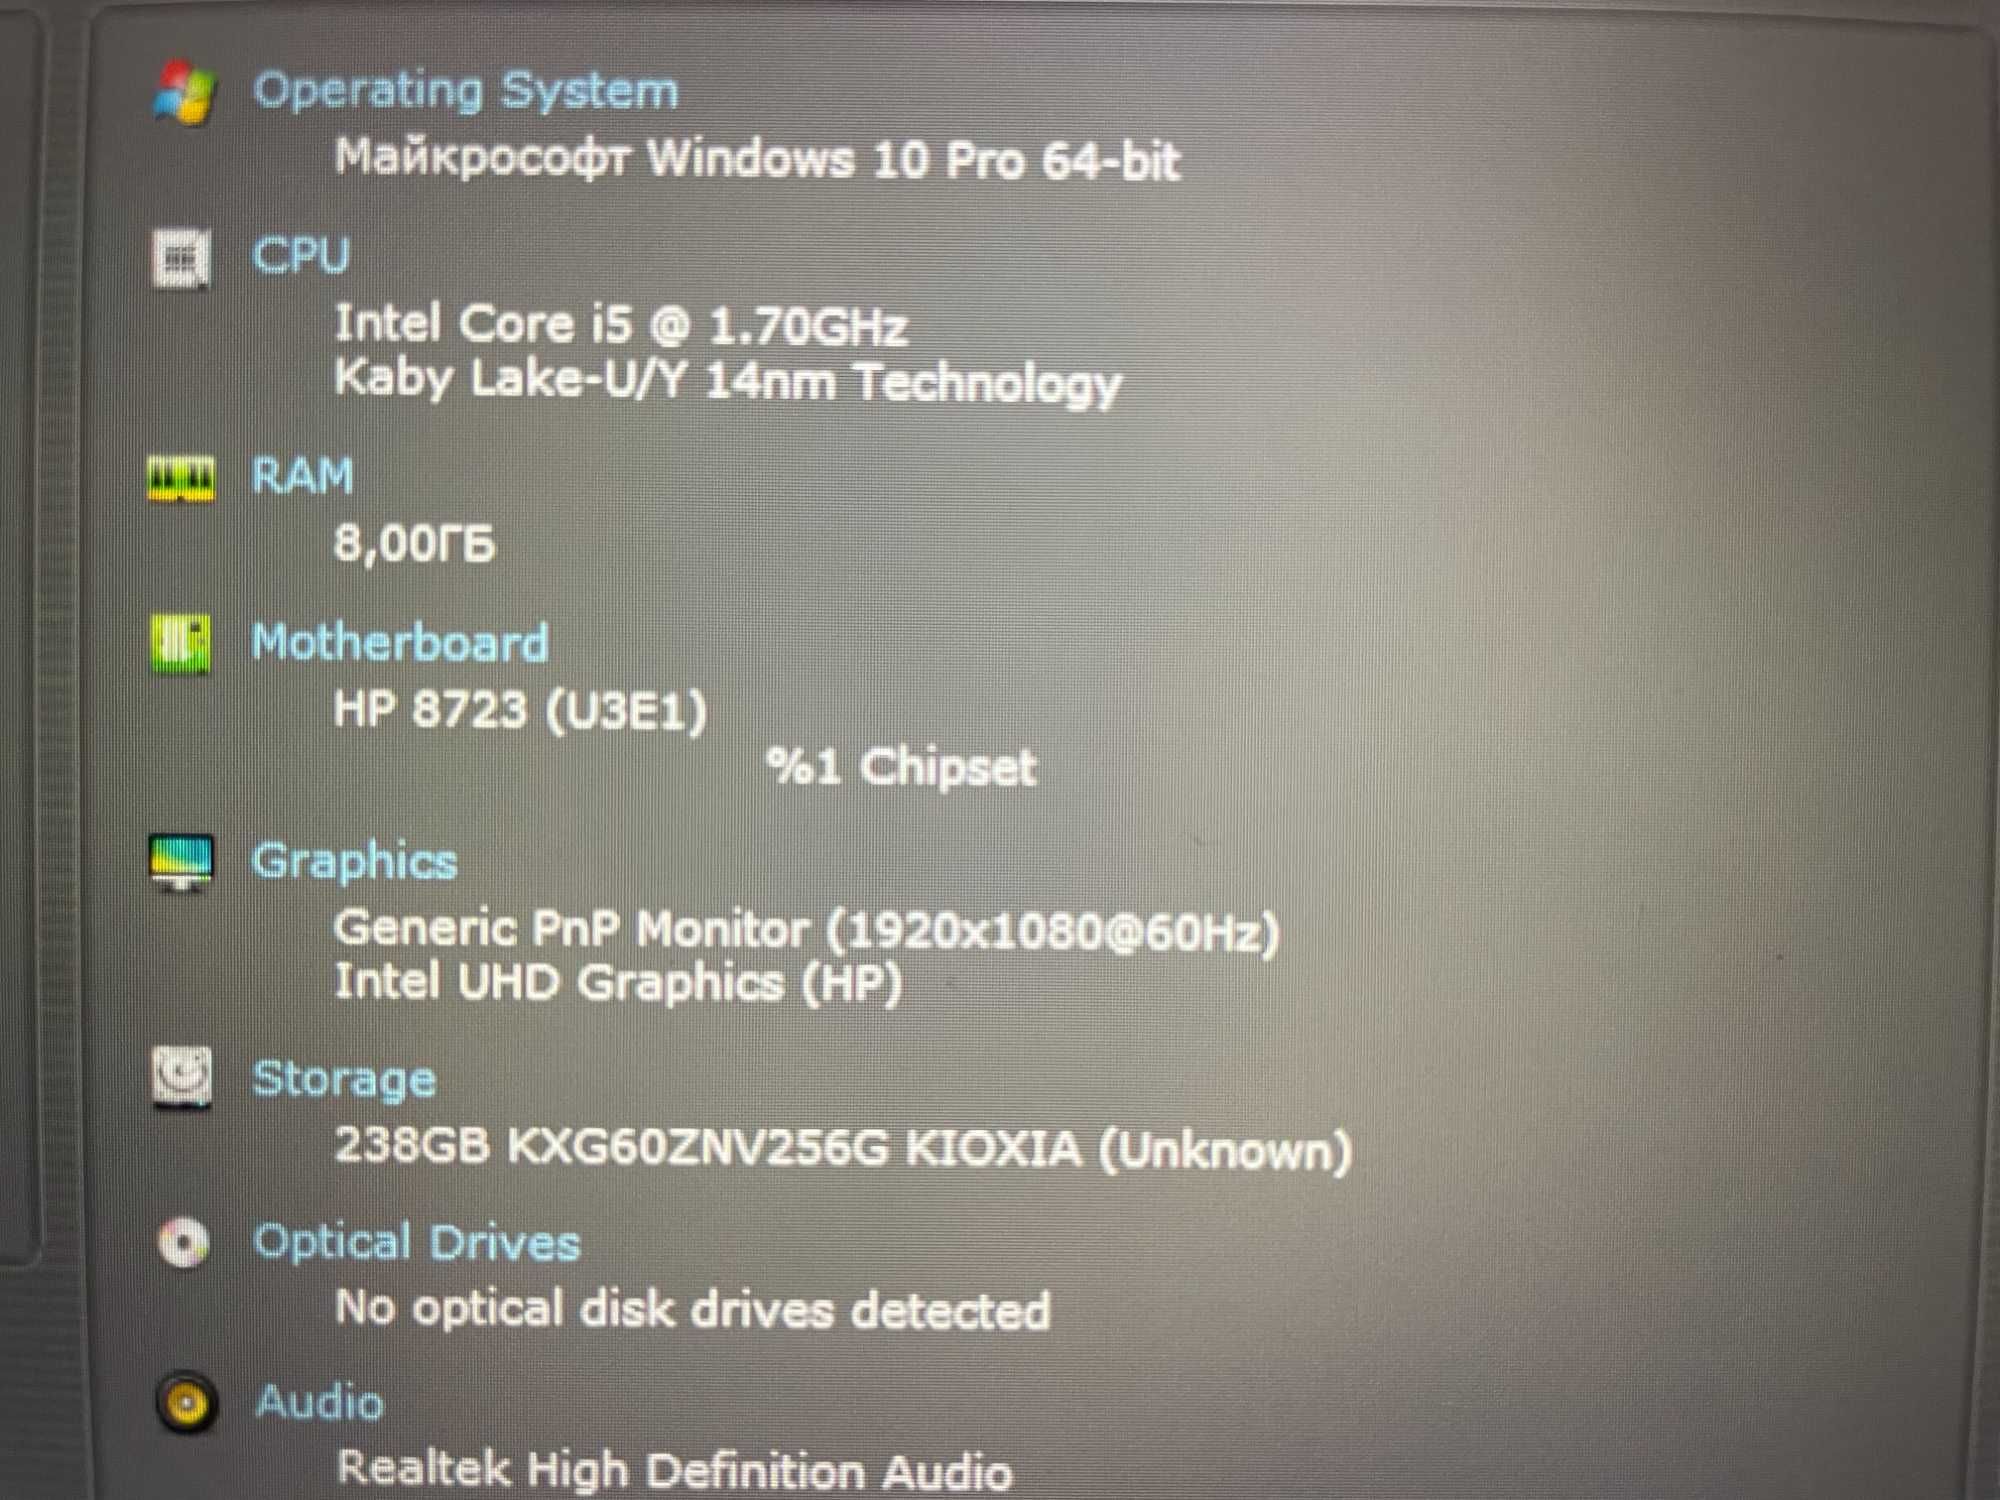 Ультрабук HP Elitebook 840 G7 Touch 4 ЯДРА FULL IPS R8 [SSD] Куліша 22